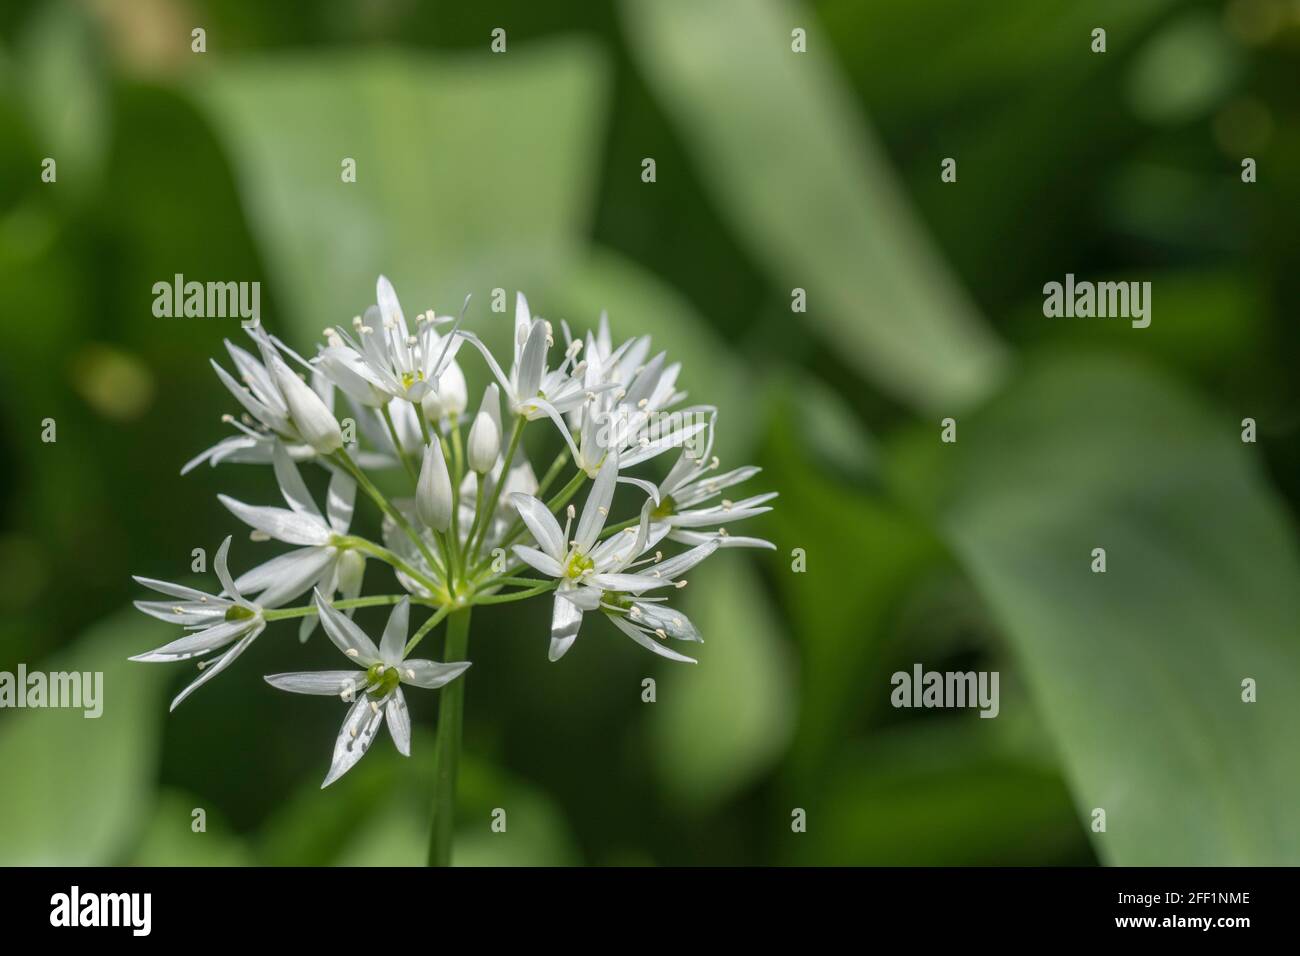 Gros plan de fleurs blanches de l'ail sauvage appelé Ramsons / Allium ursinum. Un vert sauvage comestible et savoureux, autrefois utilisé comme plante médicinale Banque D'Images